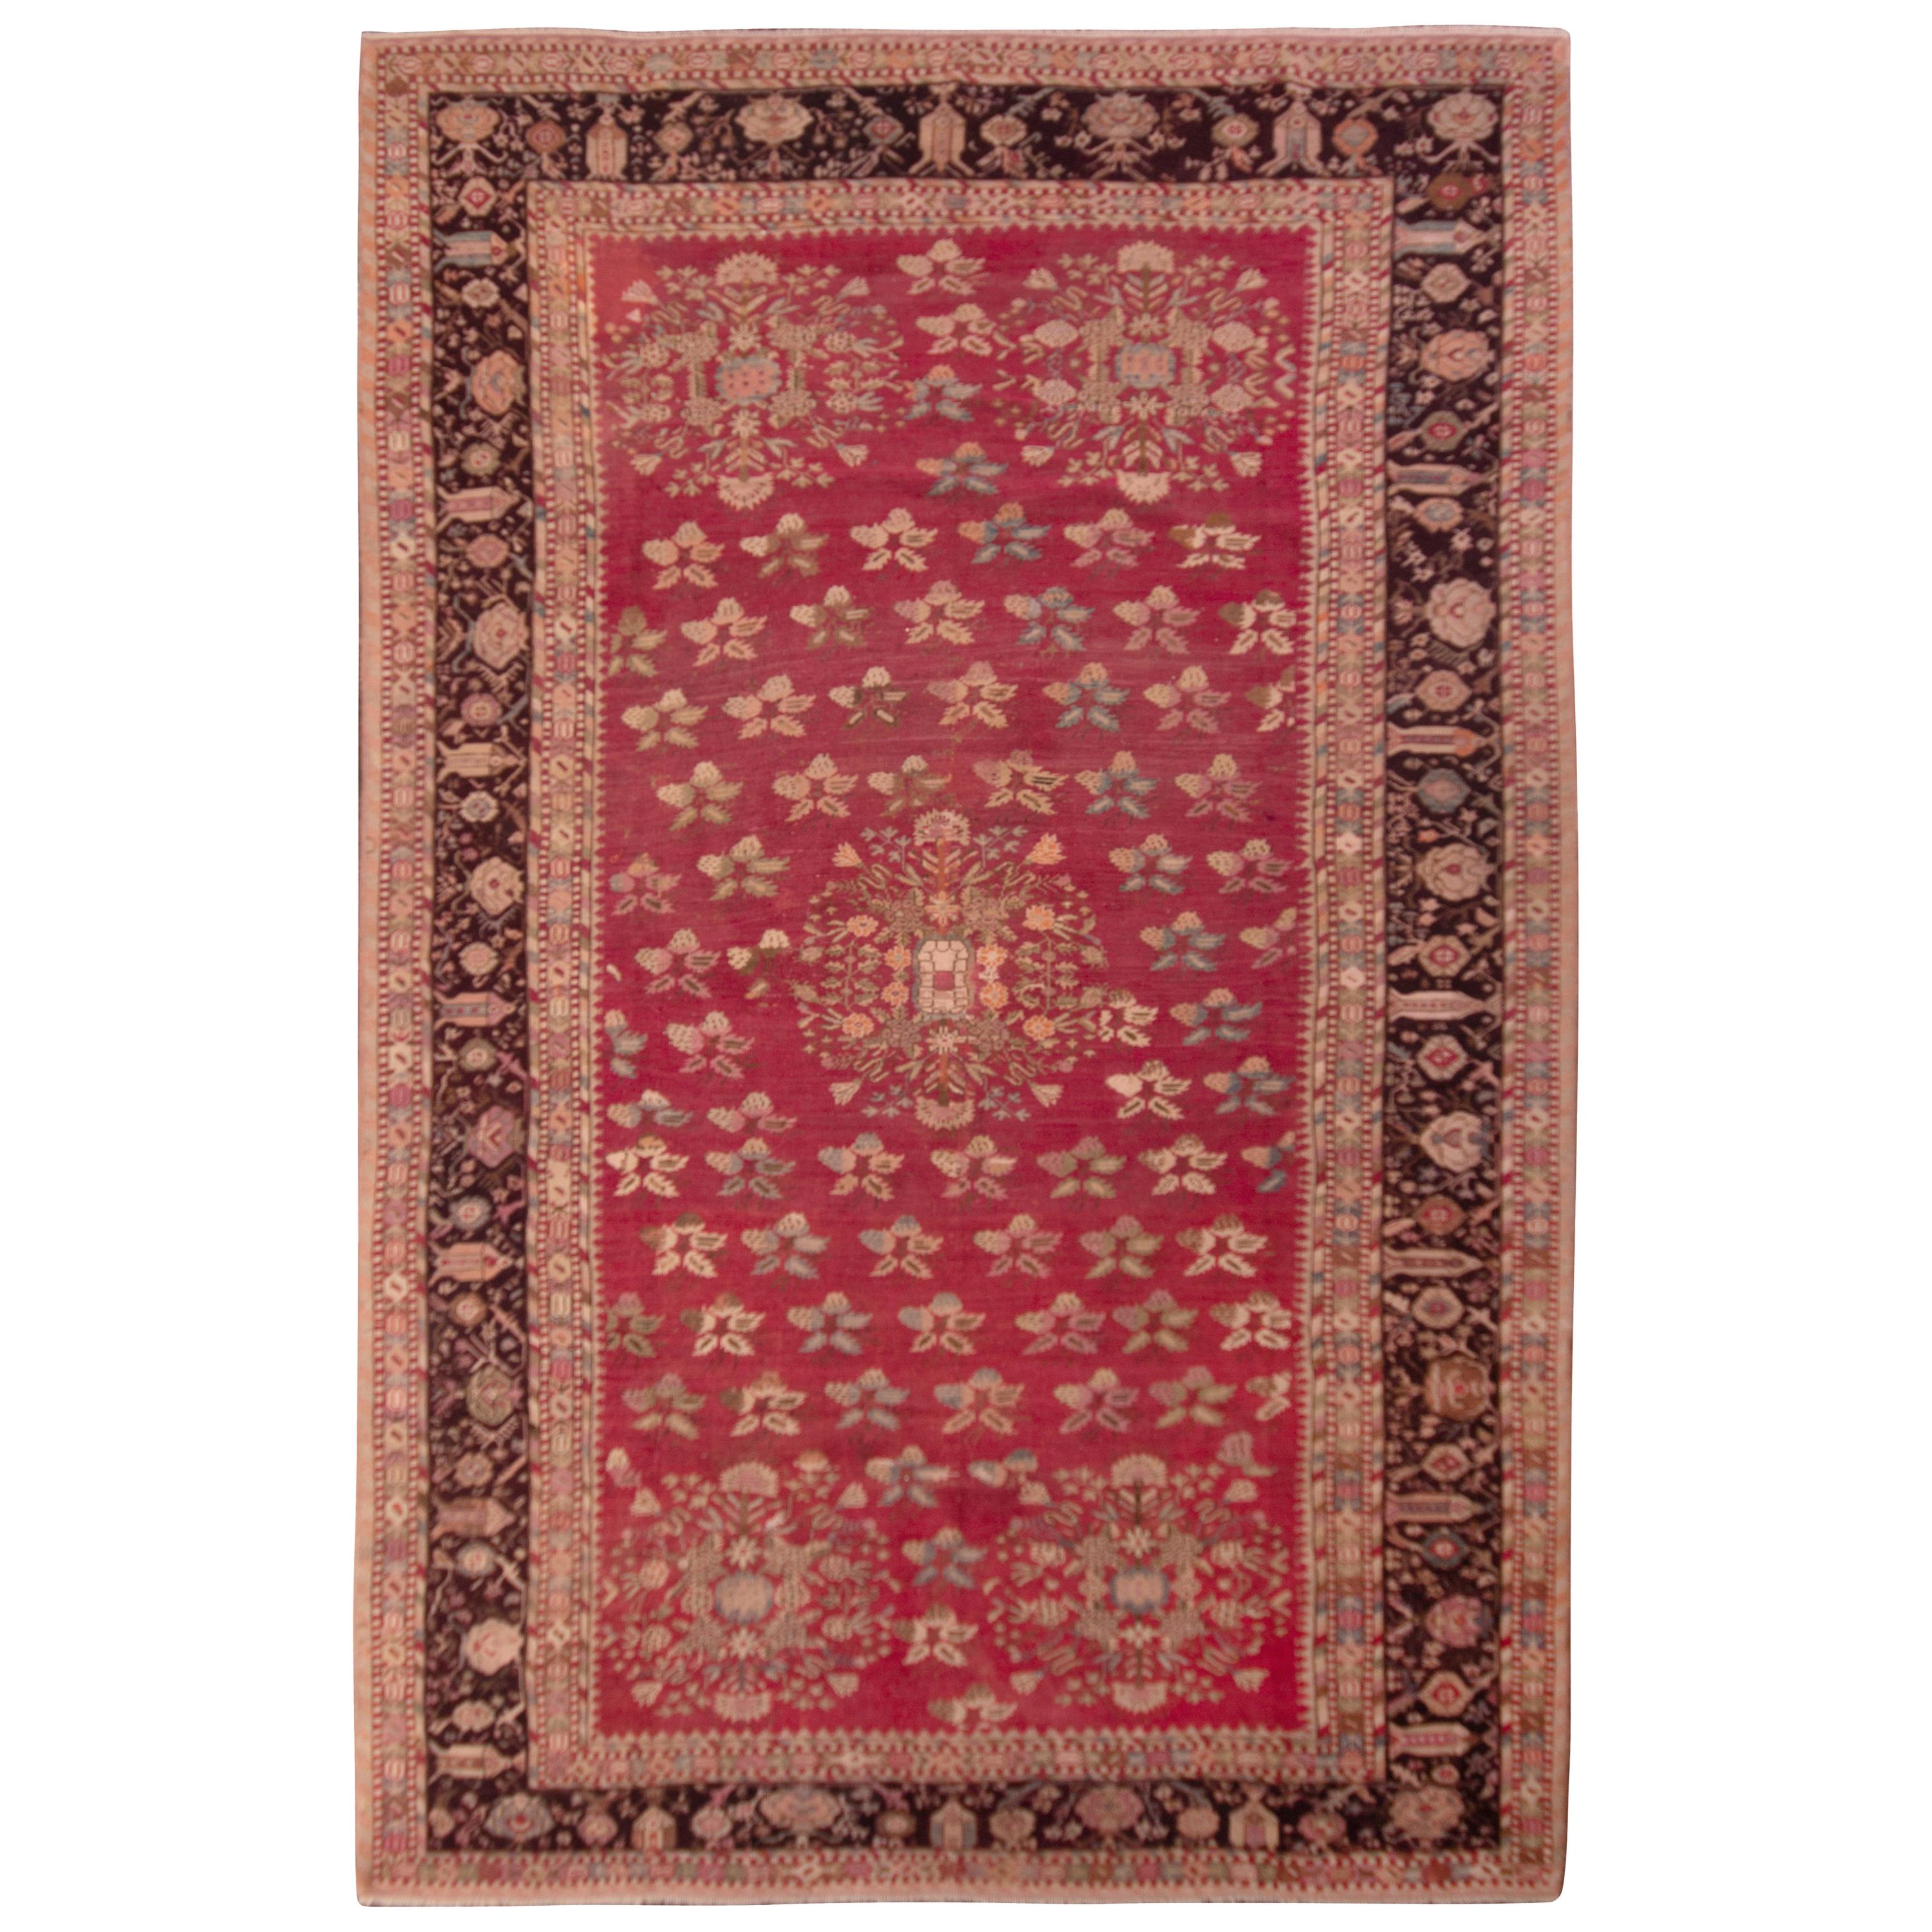 Handgeknüpfter antiker Gordes-Teppich mit rotem und beigefarbenem Blumenmuster von Teppich & Kelim